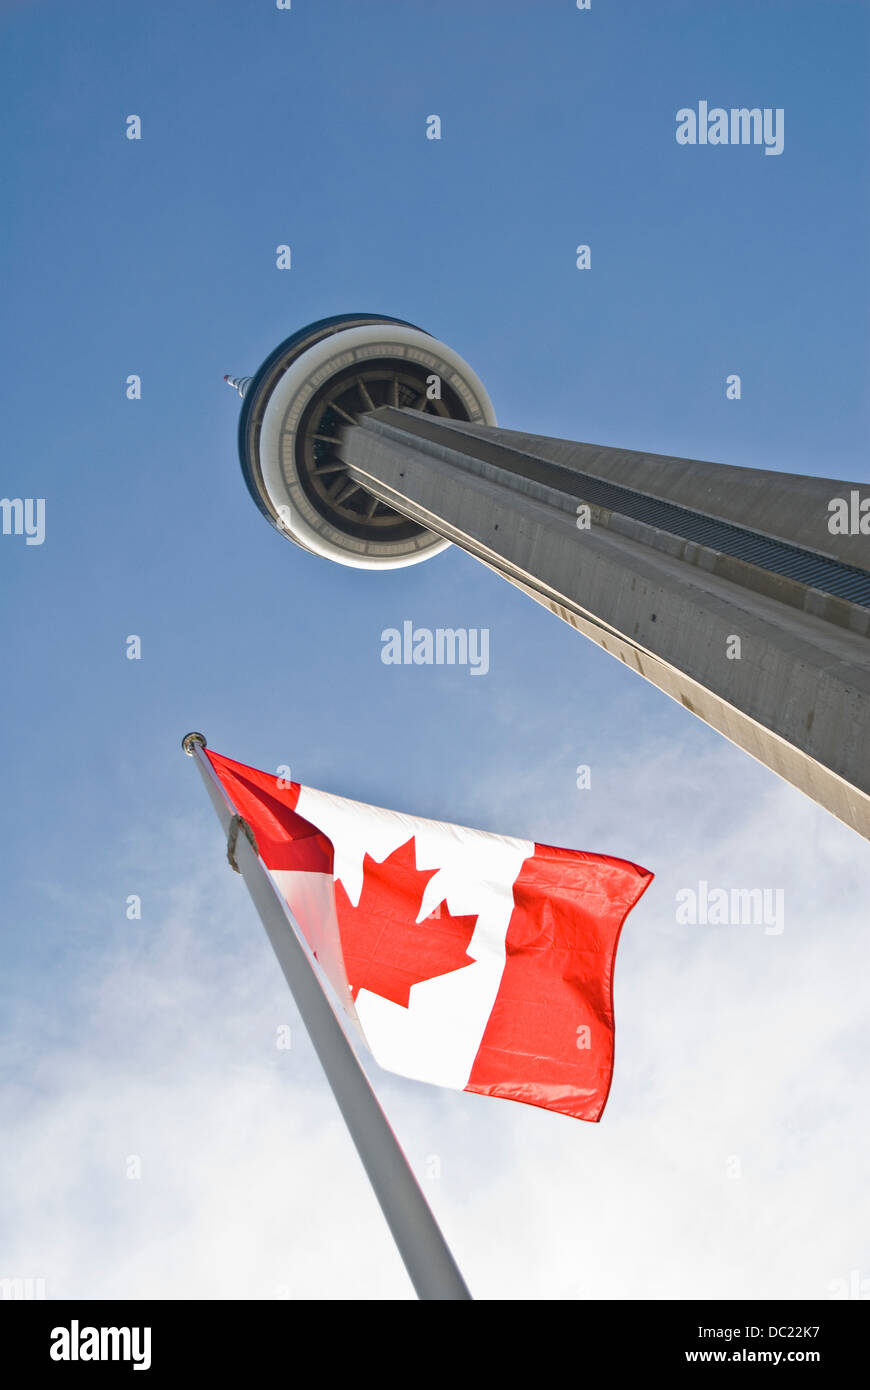 Basso angolo vista della CN Tower a Toronto, Ontario, Canada Foto Stock